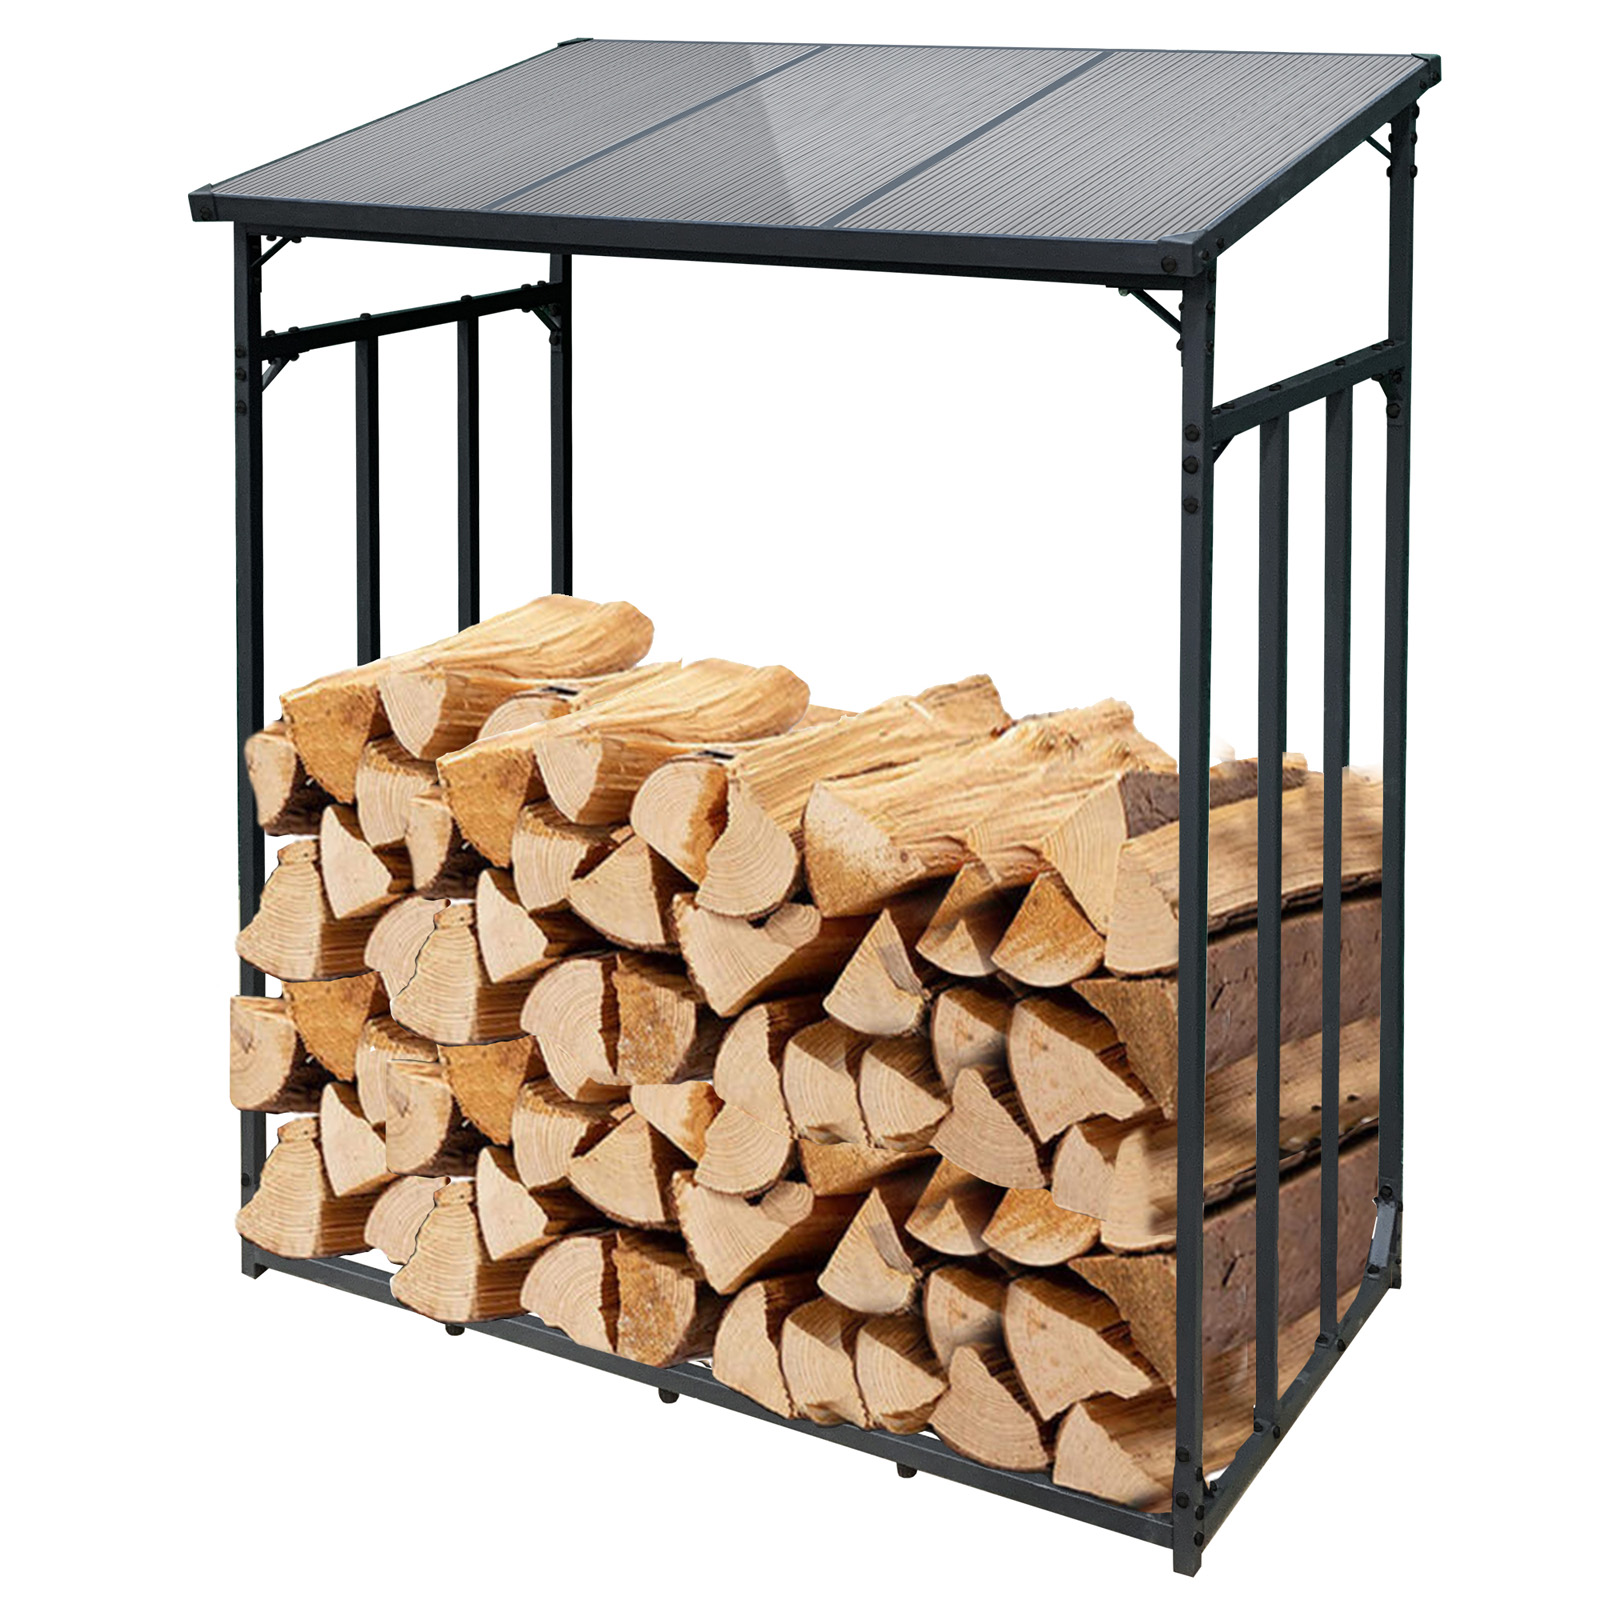 Support bois de chauffage en acier de conception moderne pour cheminée